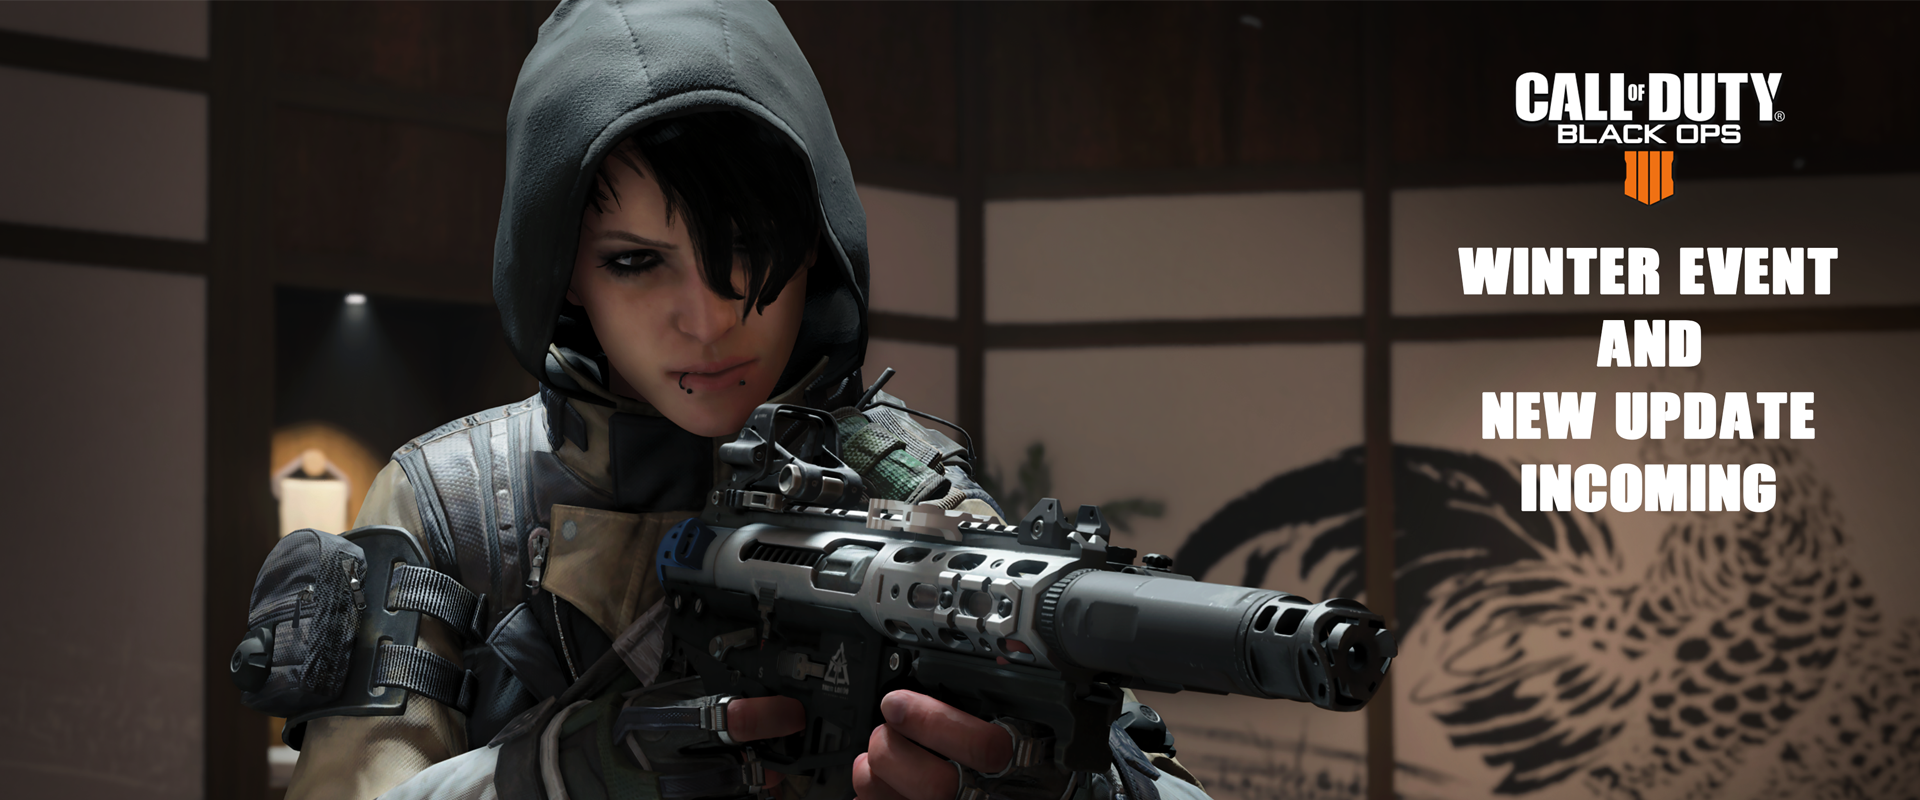 Call of Duty Black Ops 4 - új és tartalmas update érkezik, valamint a Winter Event PS4-en már elérhető!